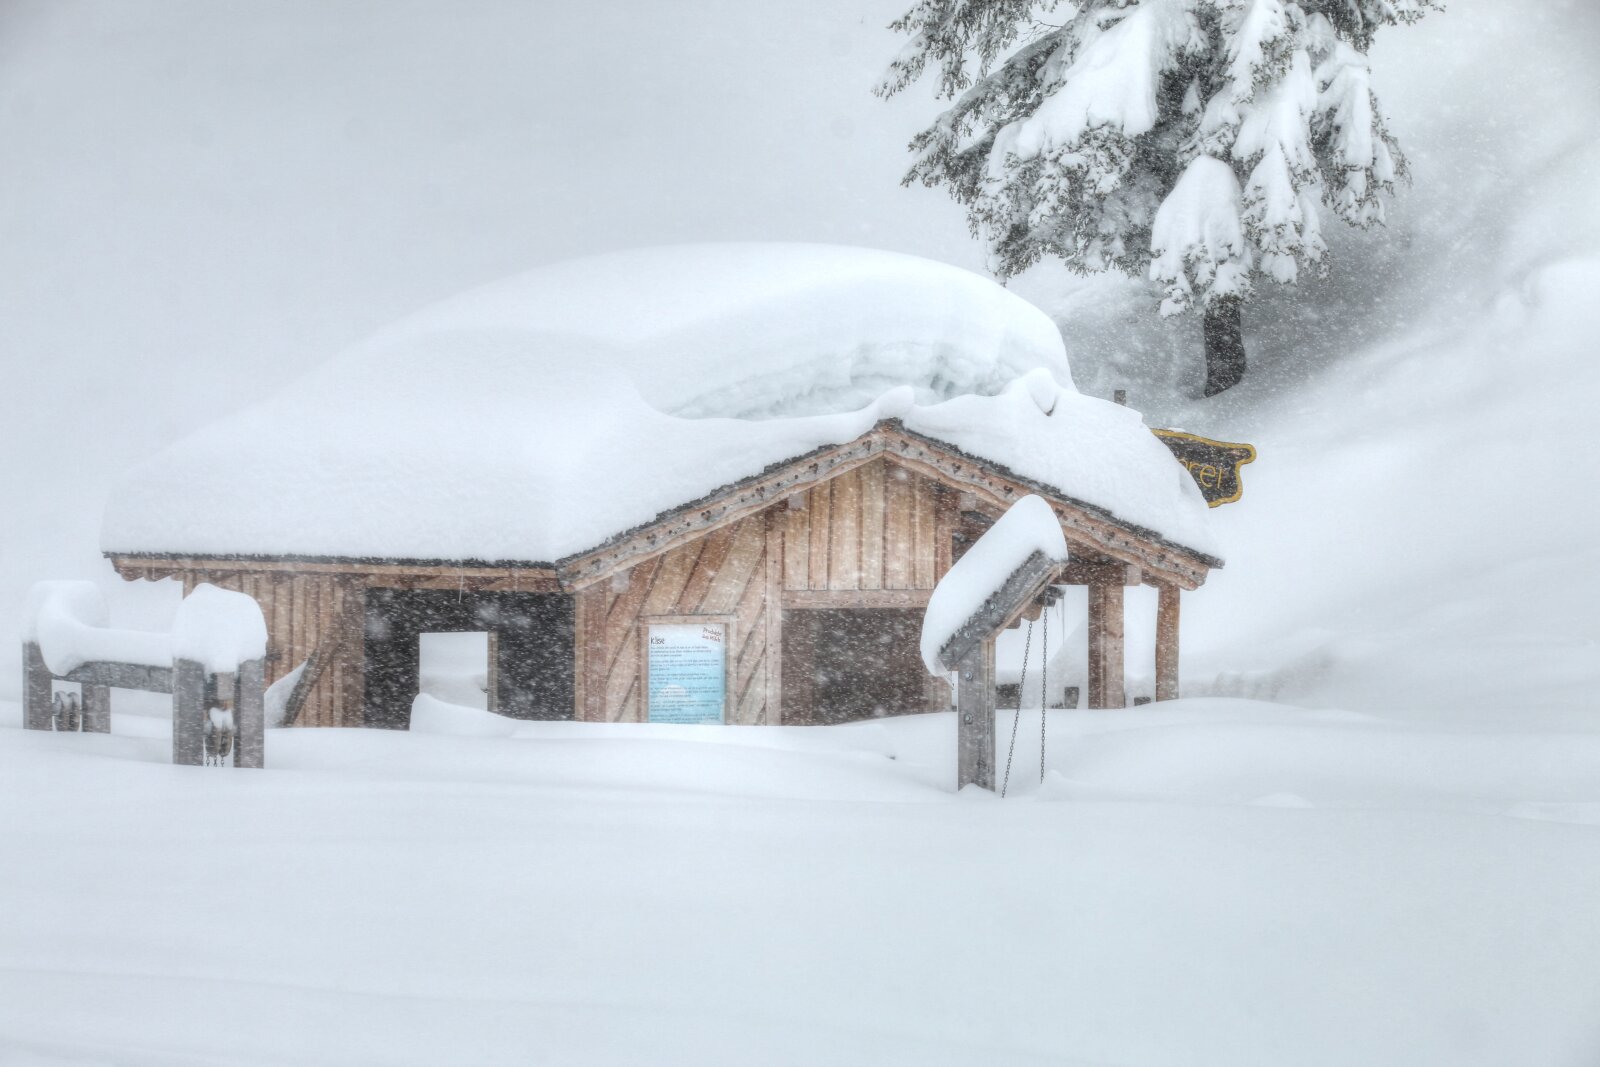 Kis faházikó süllyed el a hóban St Johann síterepén (Salzburg - Alacsony-Tauern) - Fotó: Stánicz Balázs (Stani)